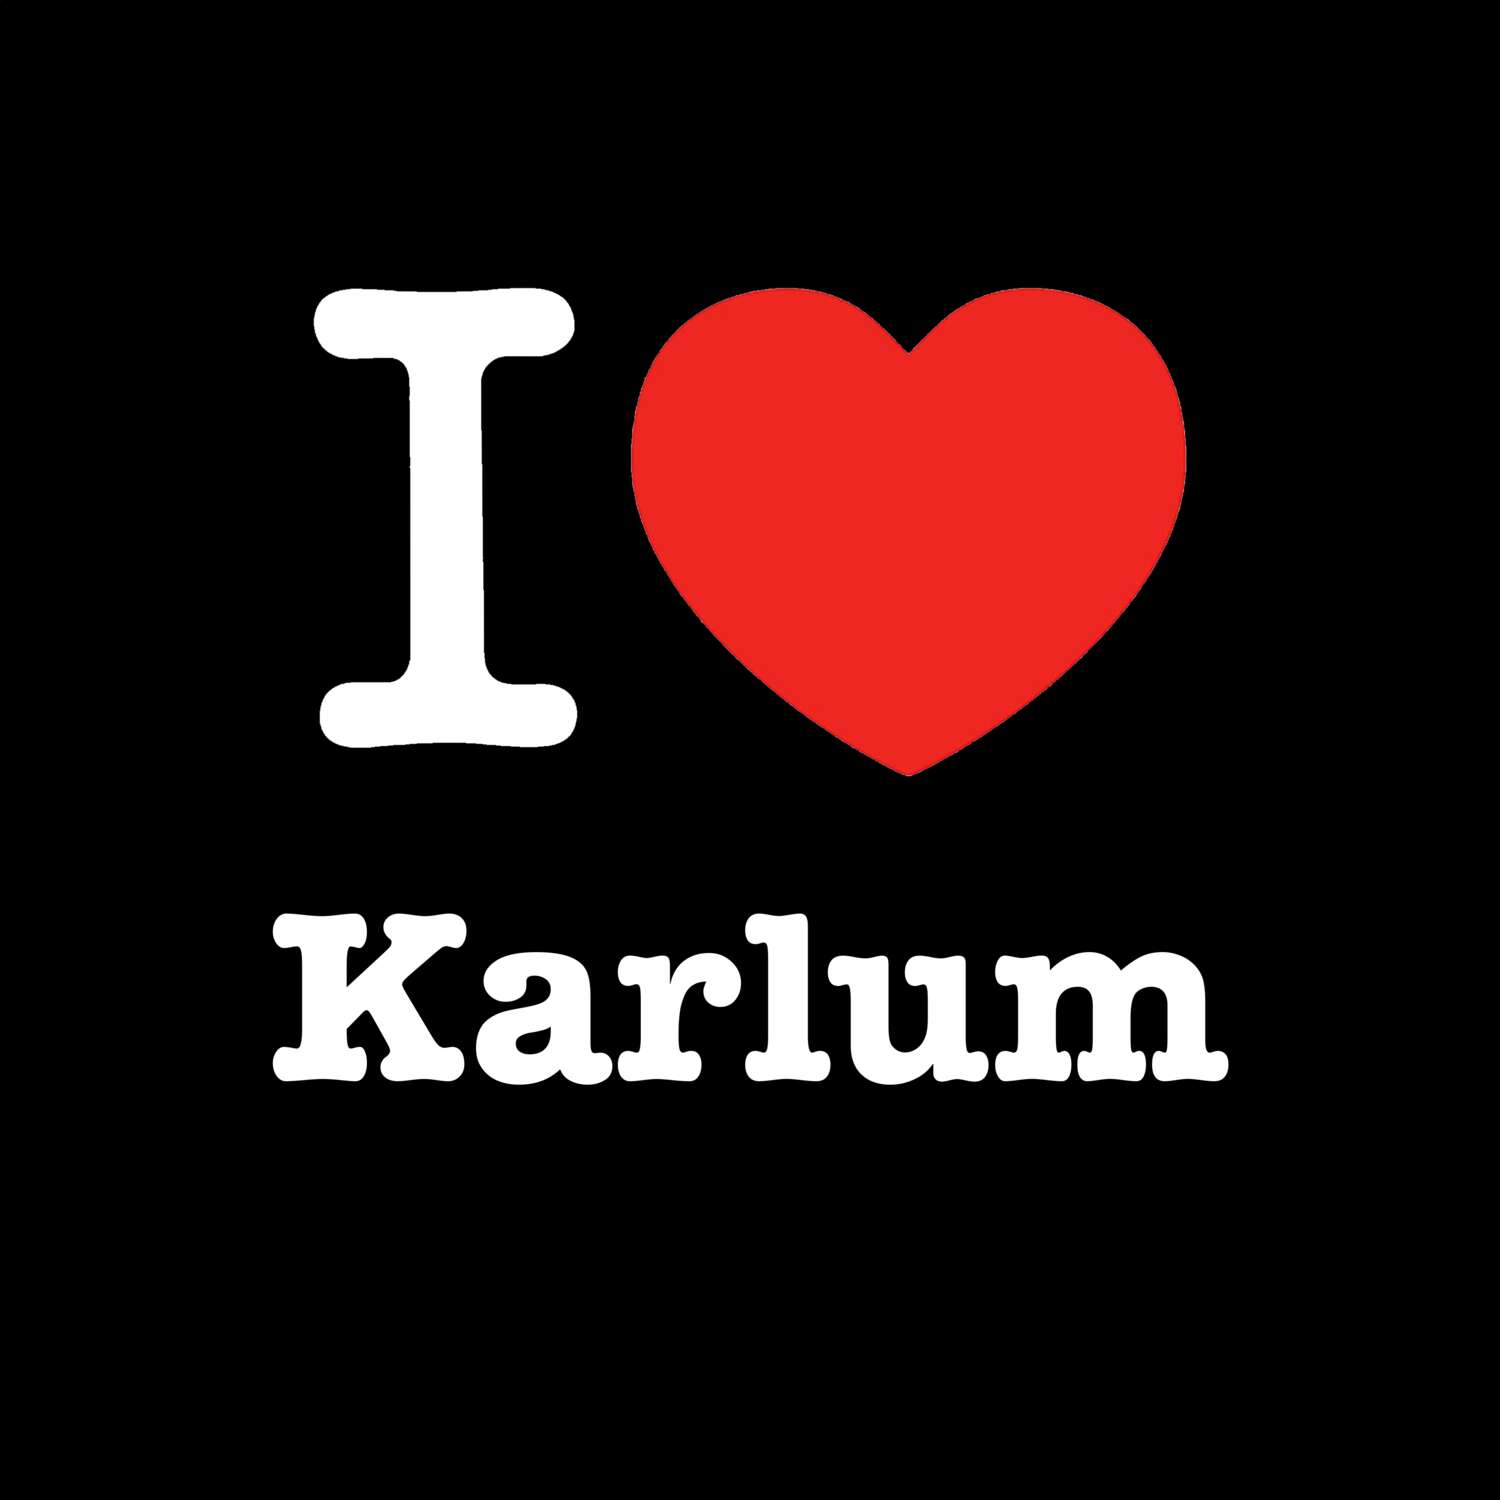 Karlum T-Shirt »I love«